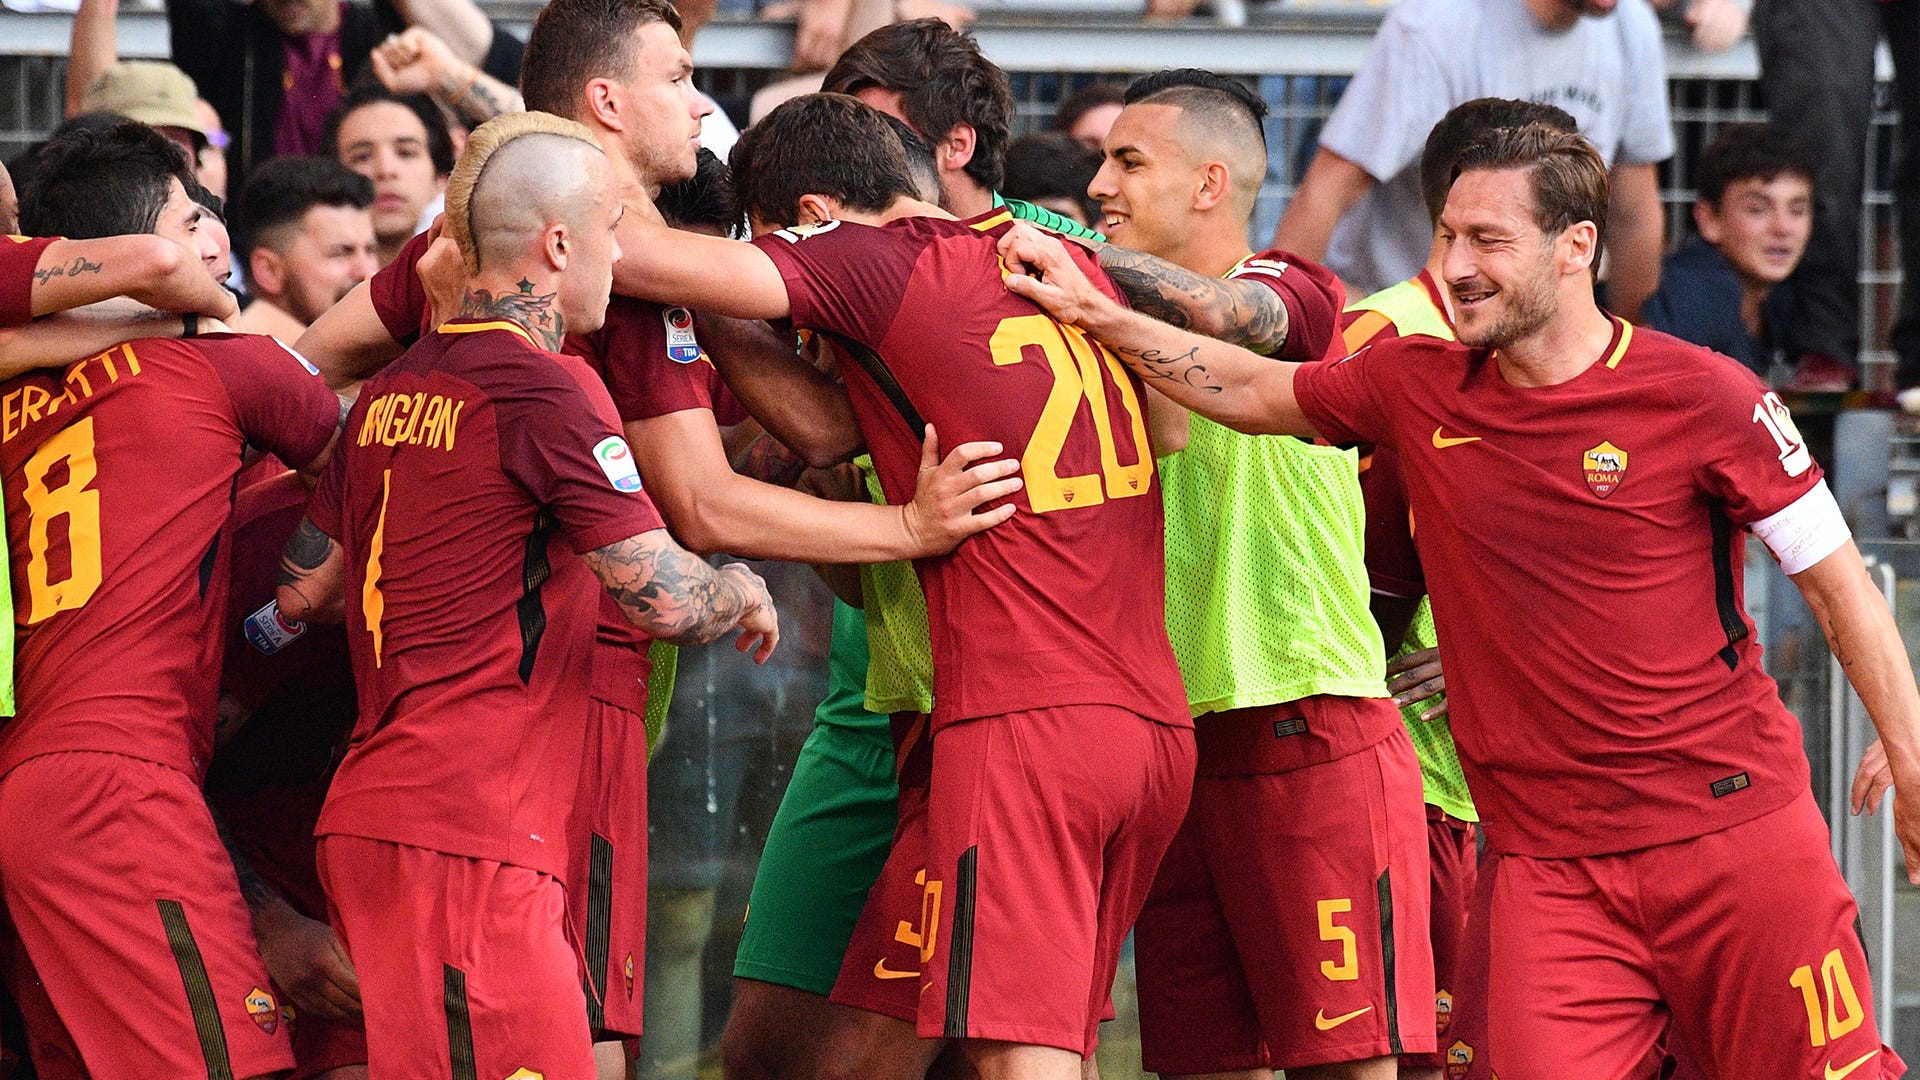 Totti marca, Roma vira sobre o Genoa e assume o segundo lugar na